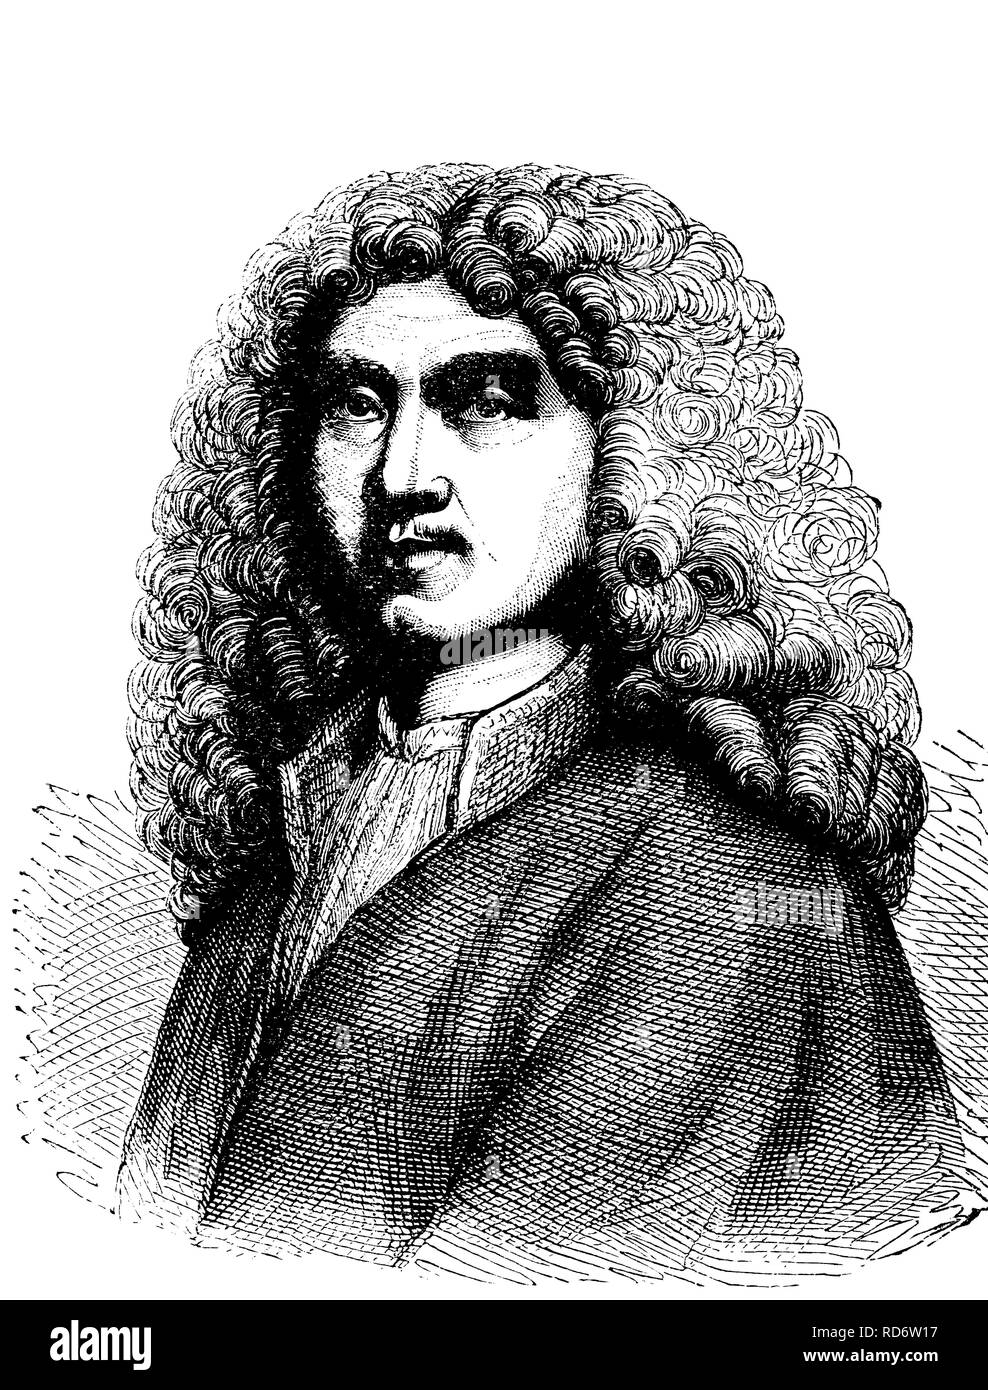 Jean-Baptiste Molière, 1622 - 1673, l'acteur et dramaturge, gravure sur bois de 1880 Banque D'Images